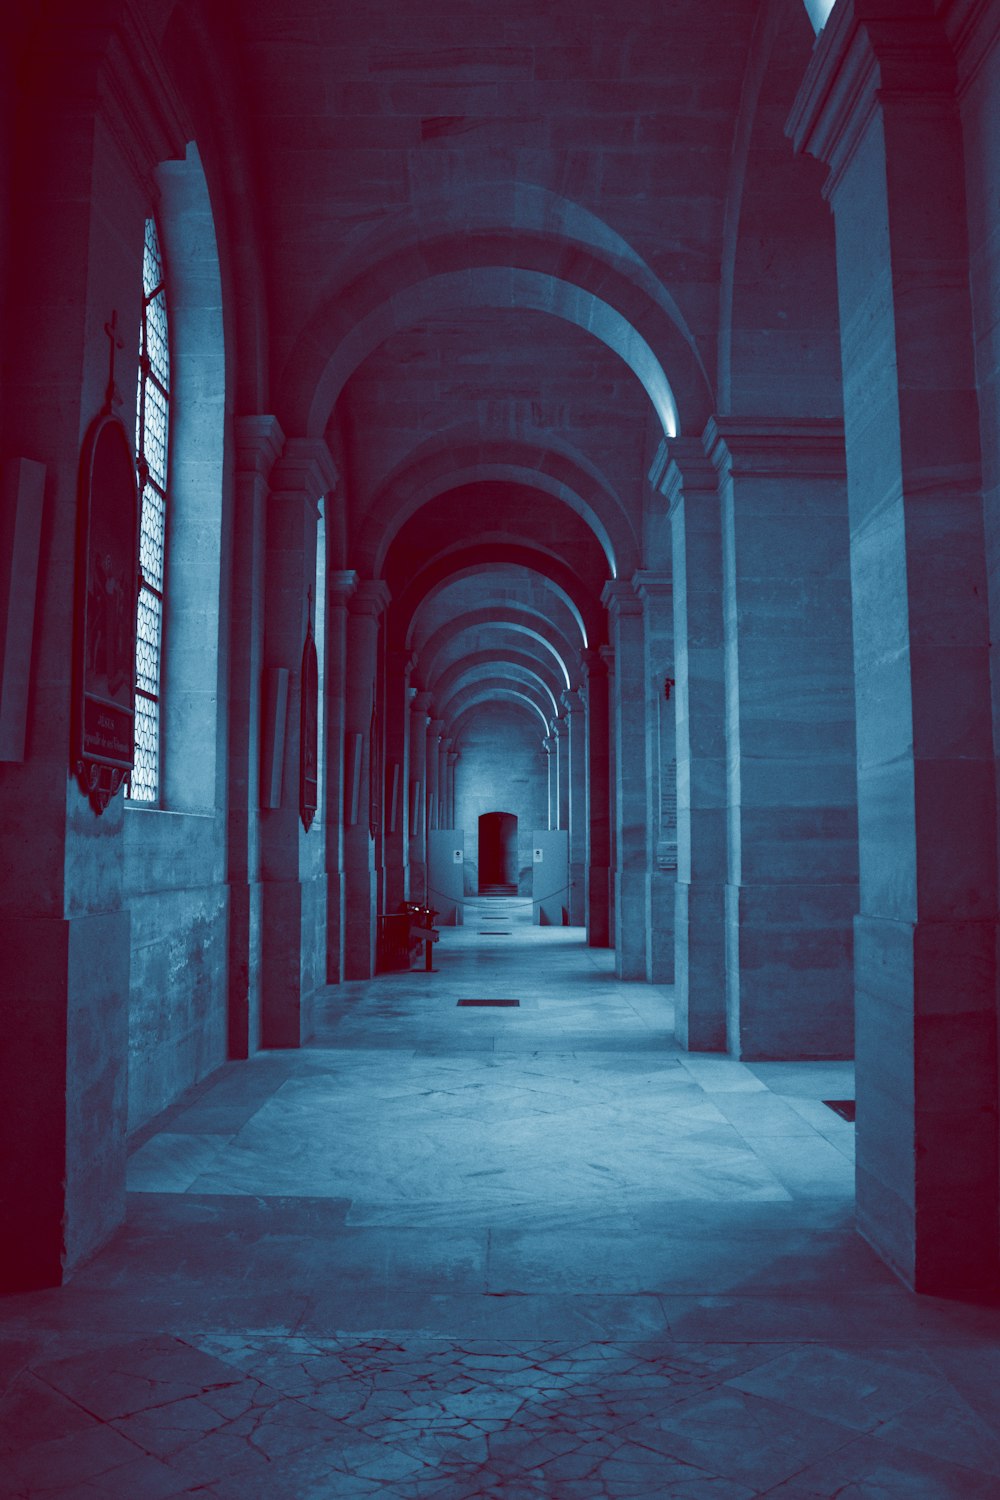 empty hallway